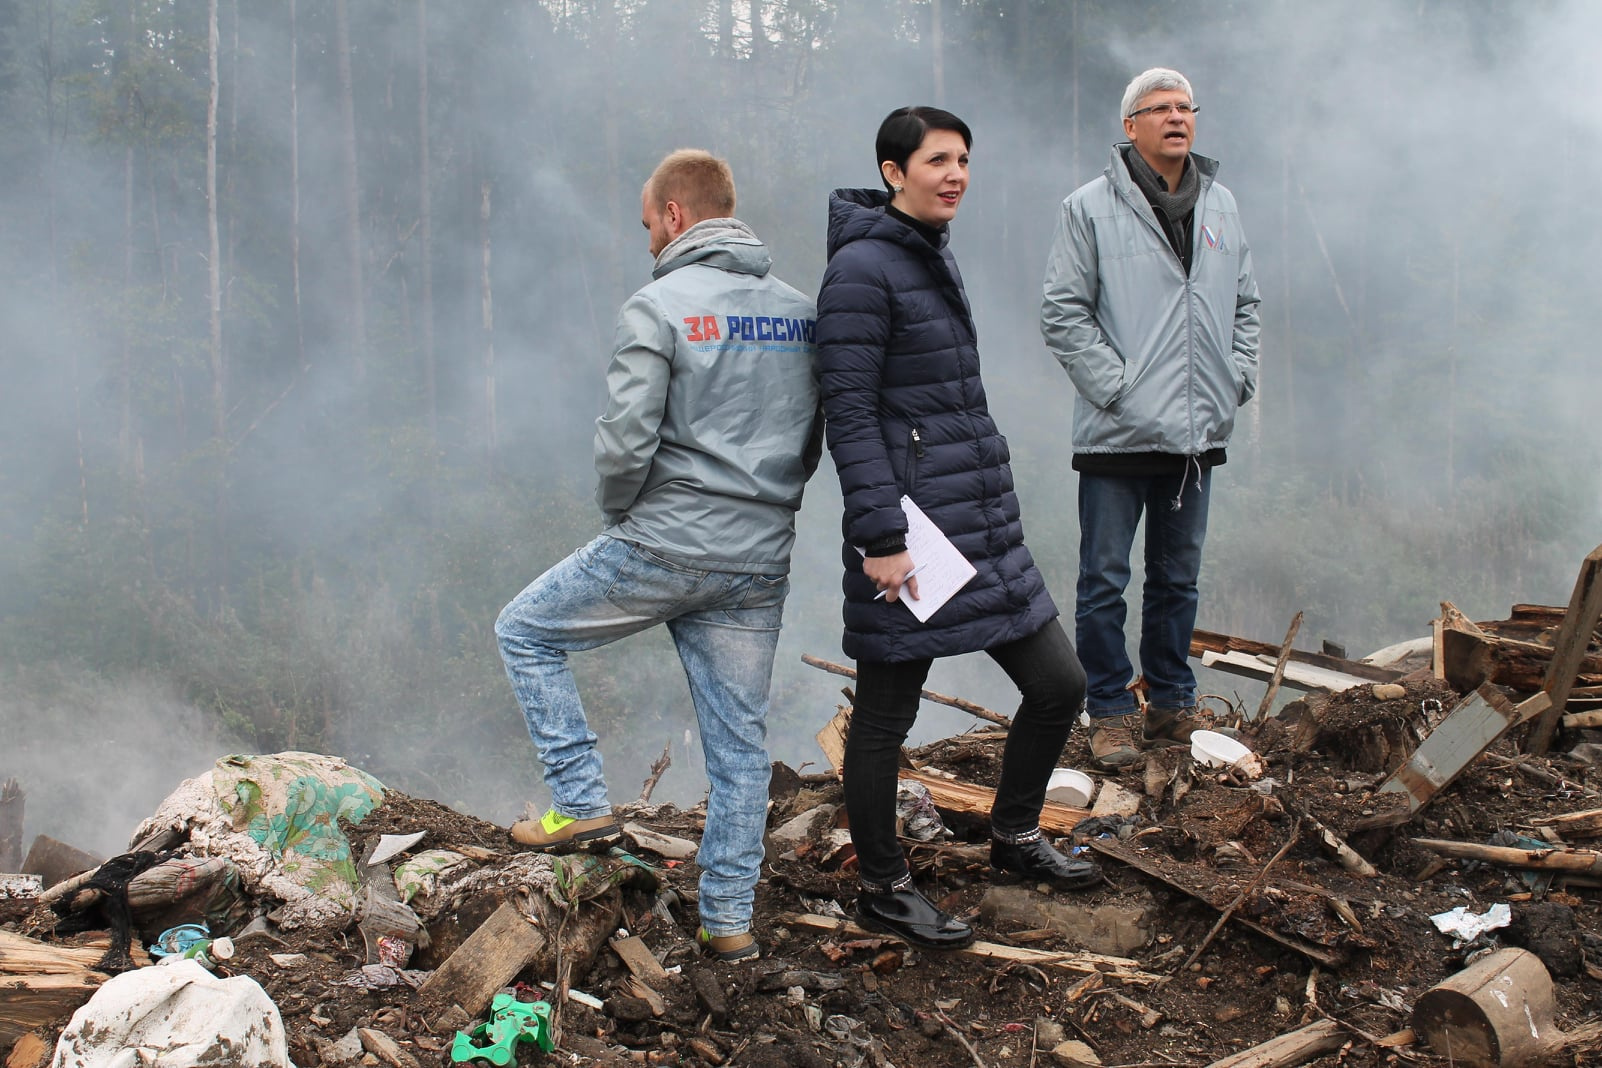 Этим фото Жанна Рябцева проиллюстрировала в соцсетях сообщение о том, что будет заниматься в Госдуме проблемами экологии